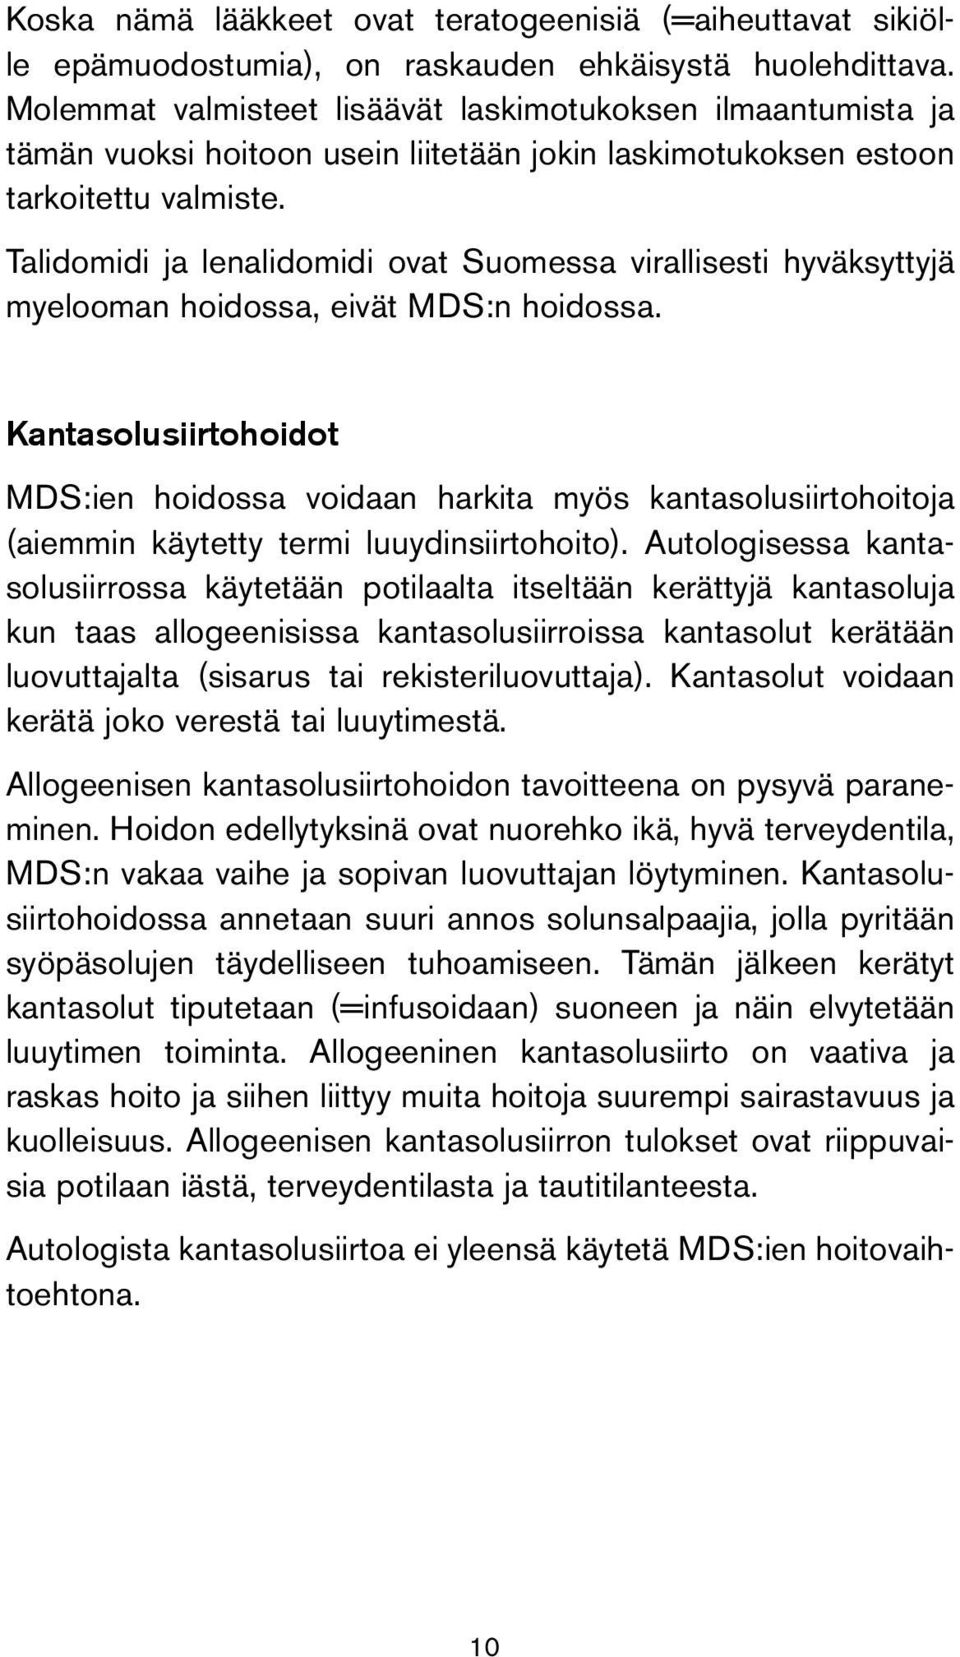 Talidomidi ja lenalidomidi ovat Suomessa virallisesti hyväksyttyjä myelooman hoidossa, eivät MDS:n hoidossa.